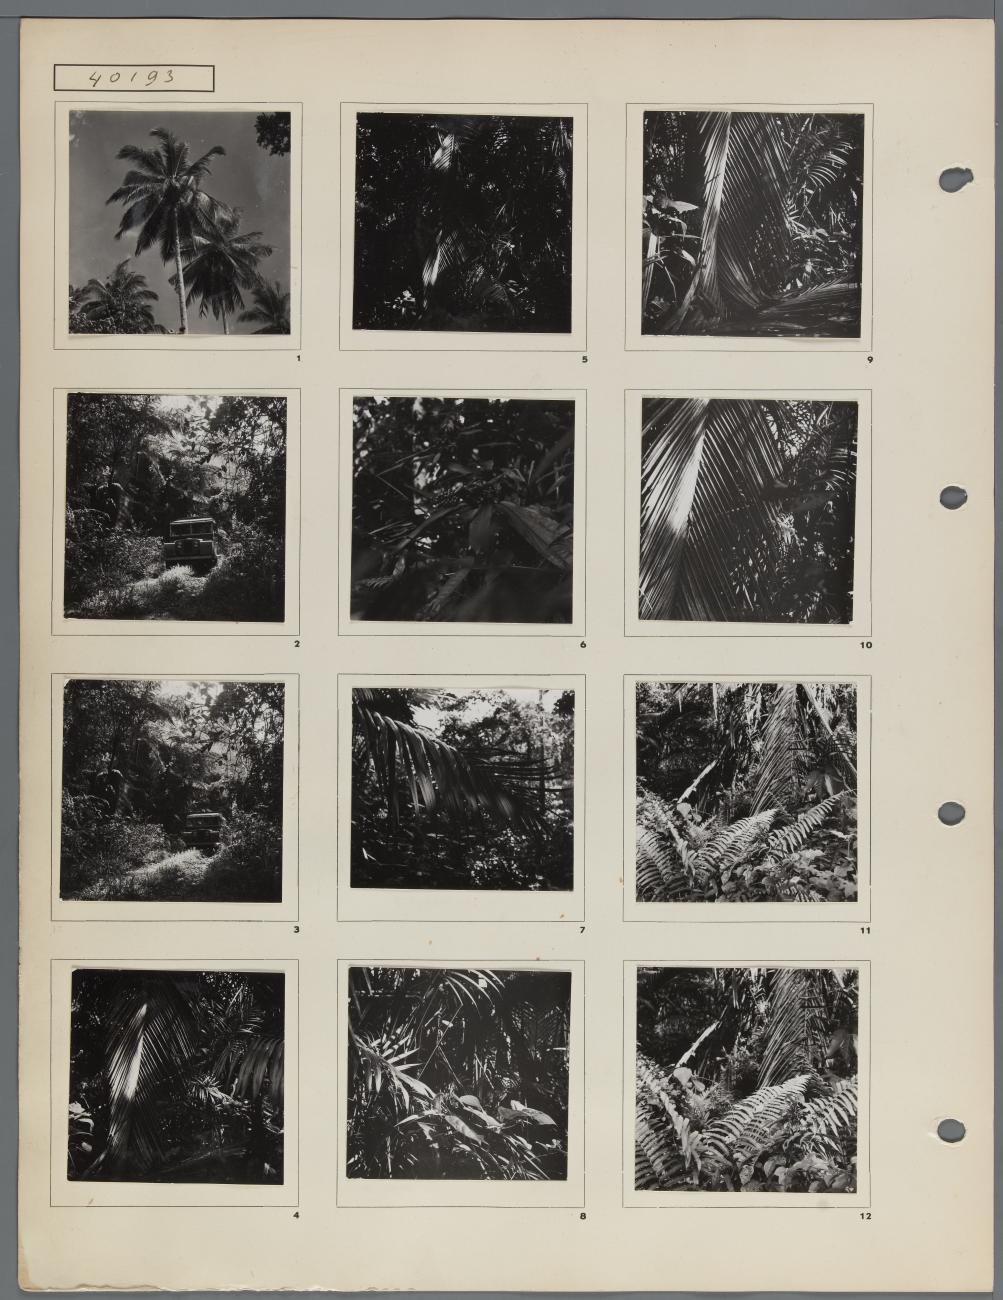 BD/163/172 - 
tropische bomen en planten onderweg naar Tanahmerah baai
